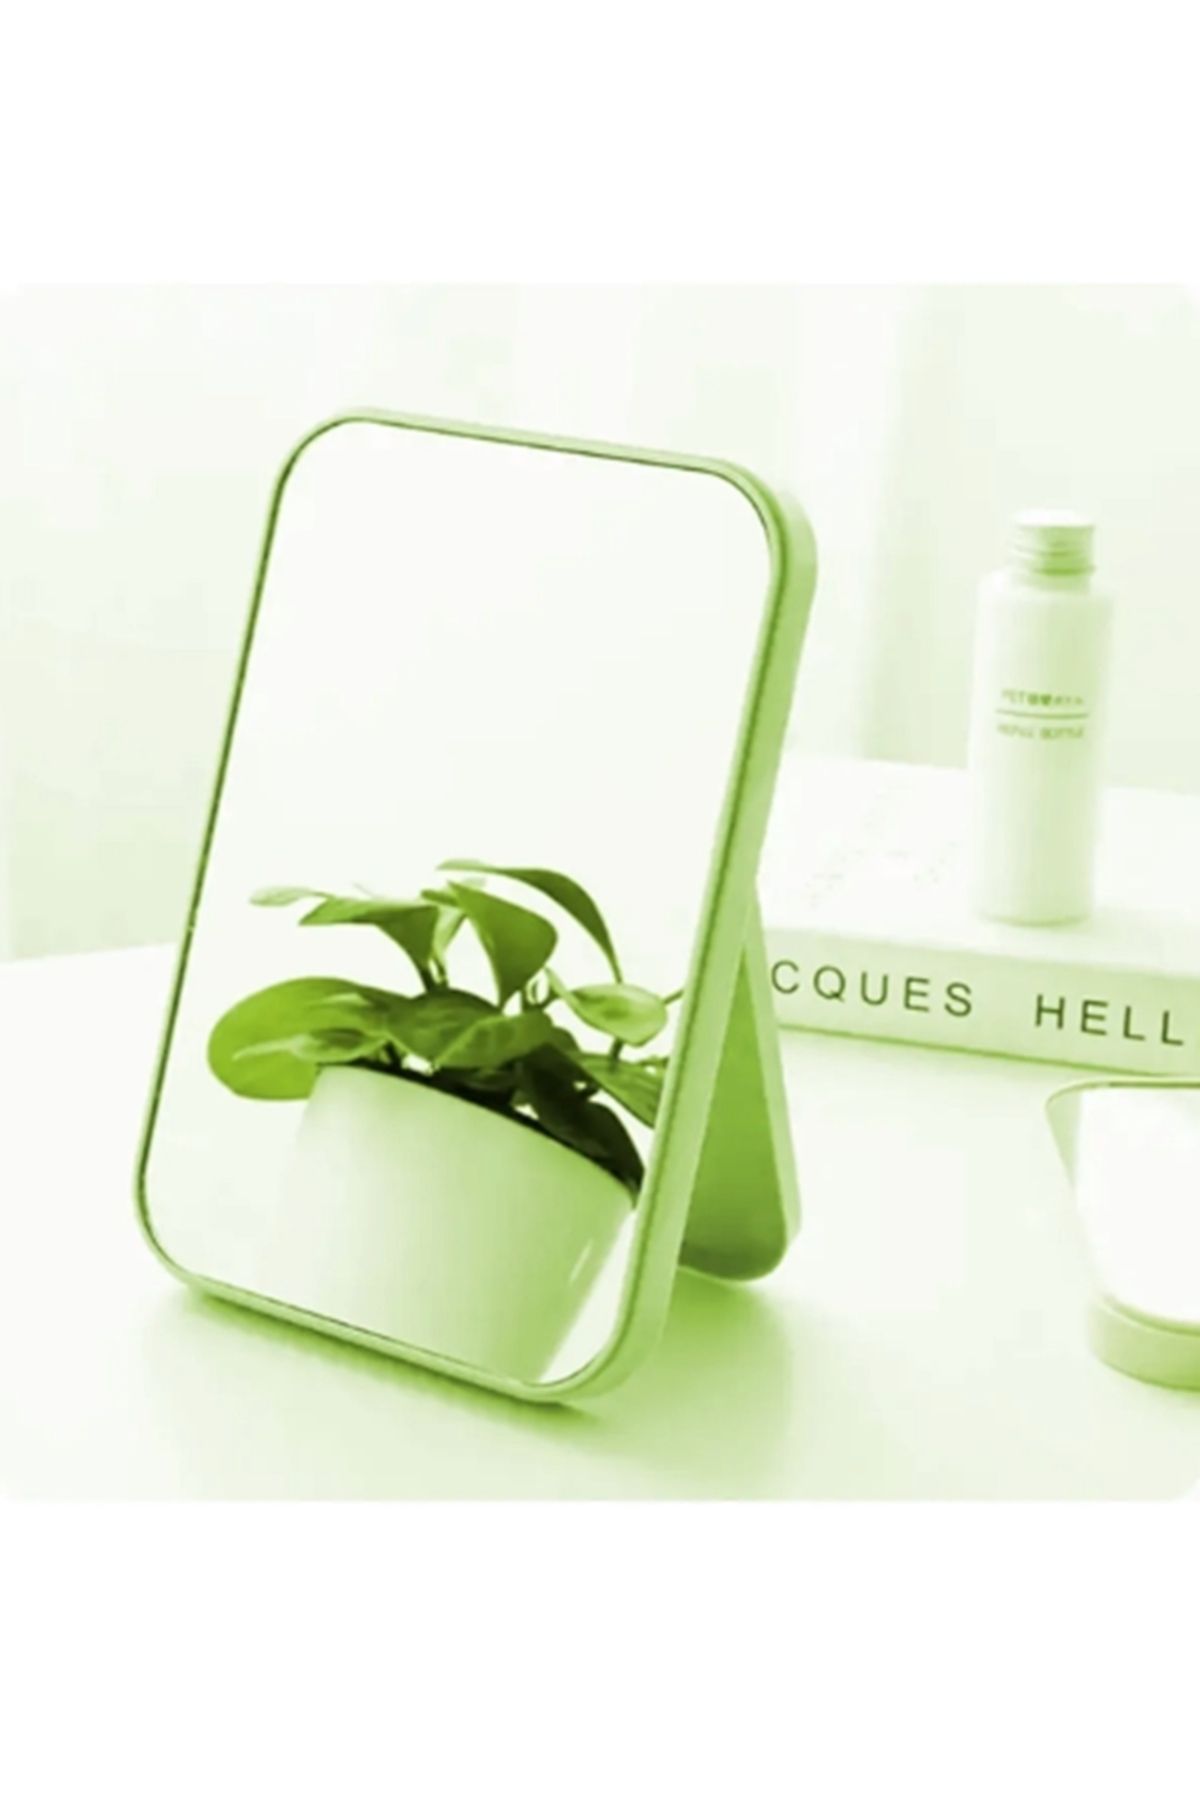 gaman Orman Yeşili Renk Kare Masaüstü Ayna - Taşınabilir Makyaj Aynası Dekoratif Plastik 15cm x 10cm